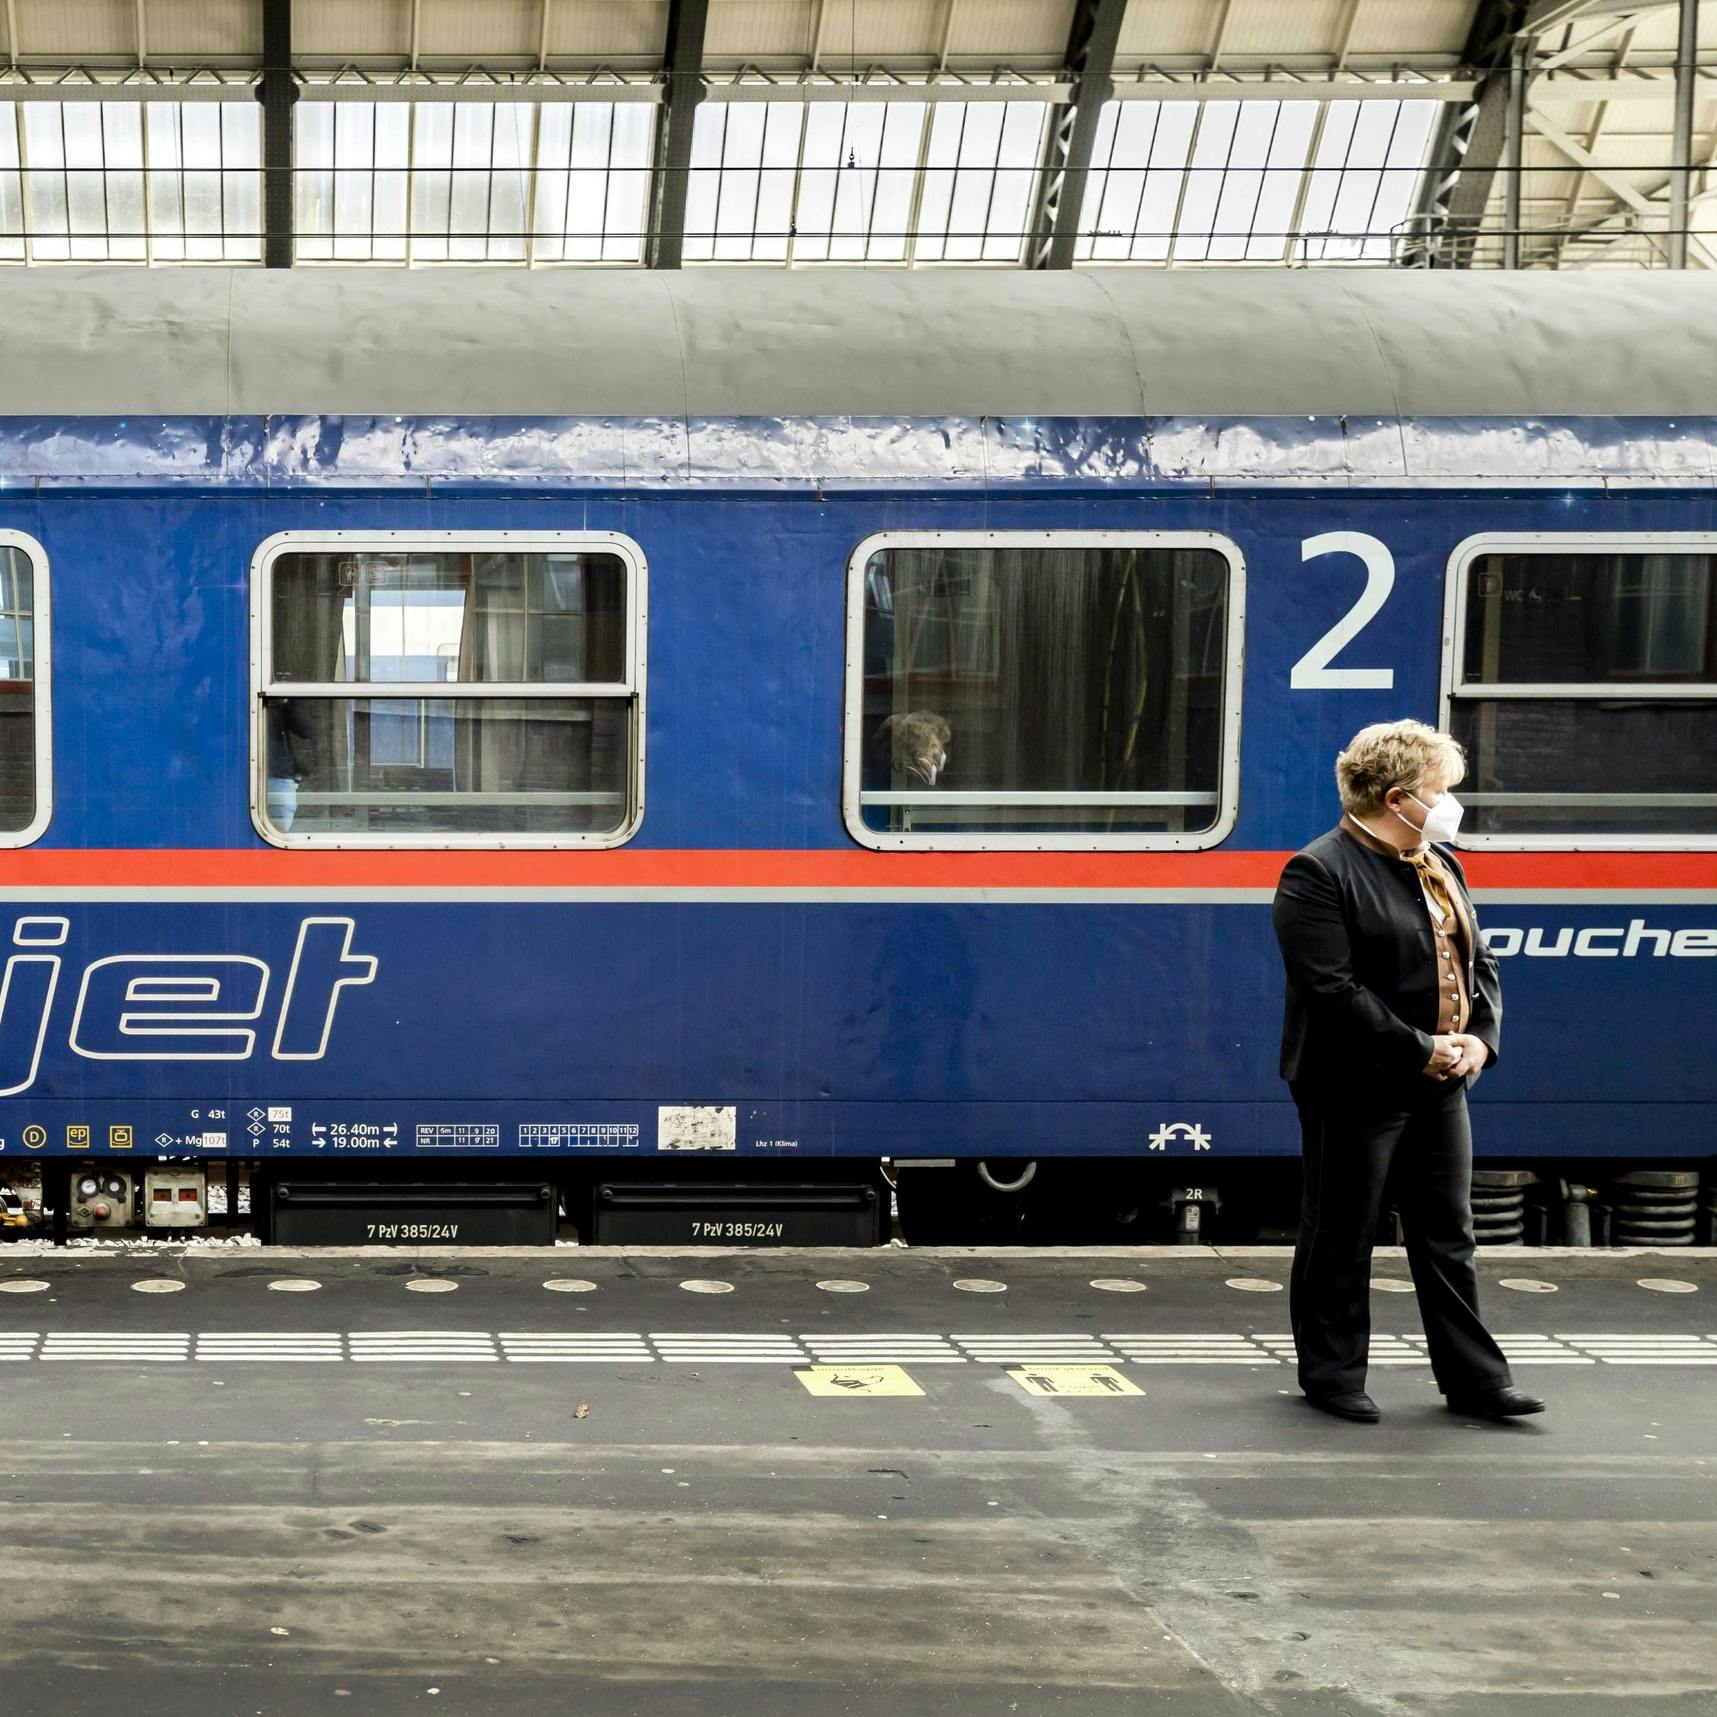 Nachttrein naar Berlijn is terug, ambities European Sleeper reiken verder